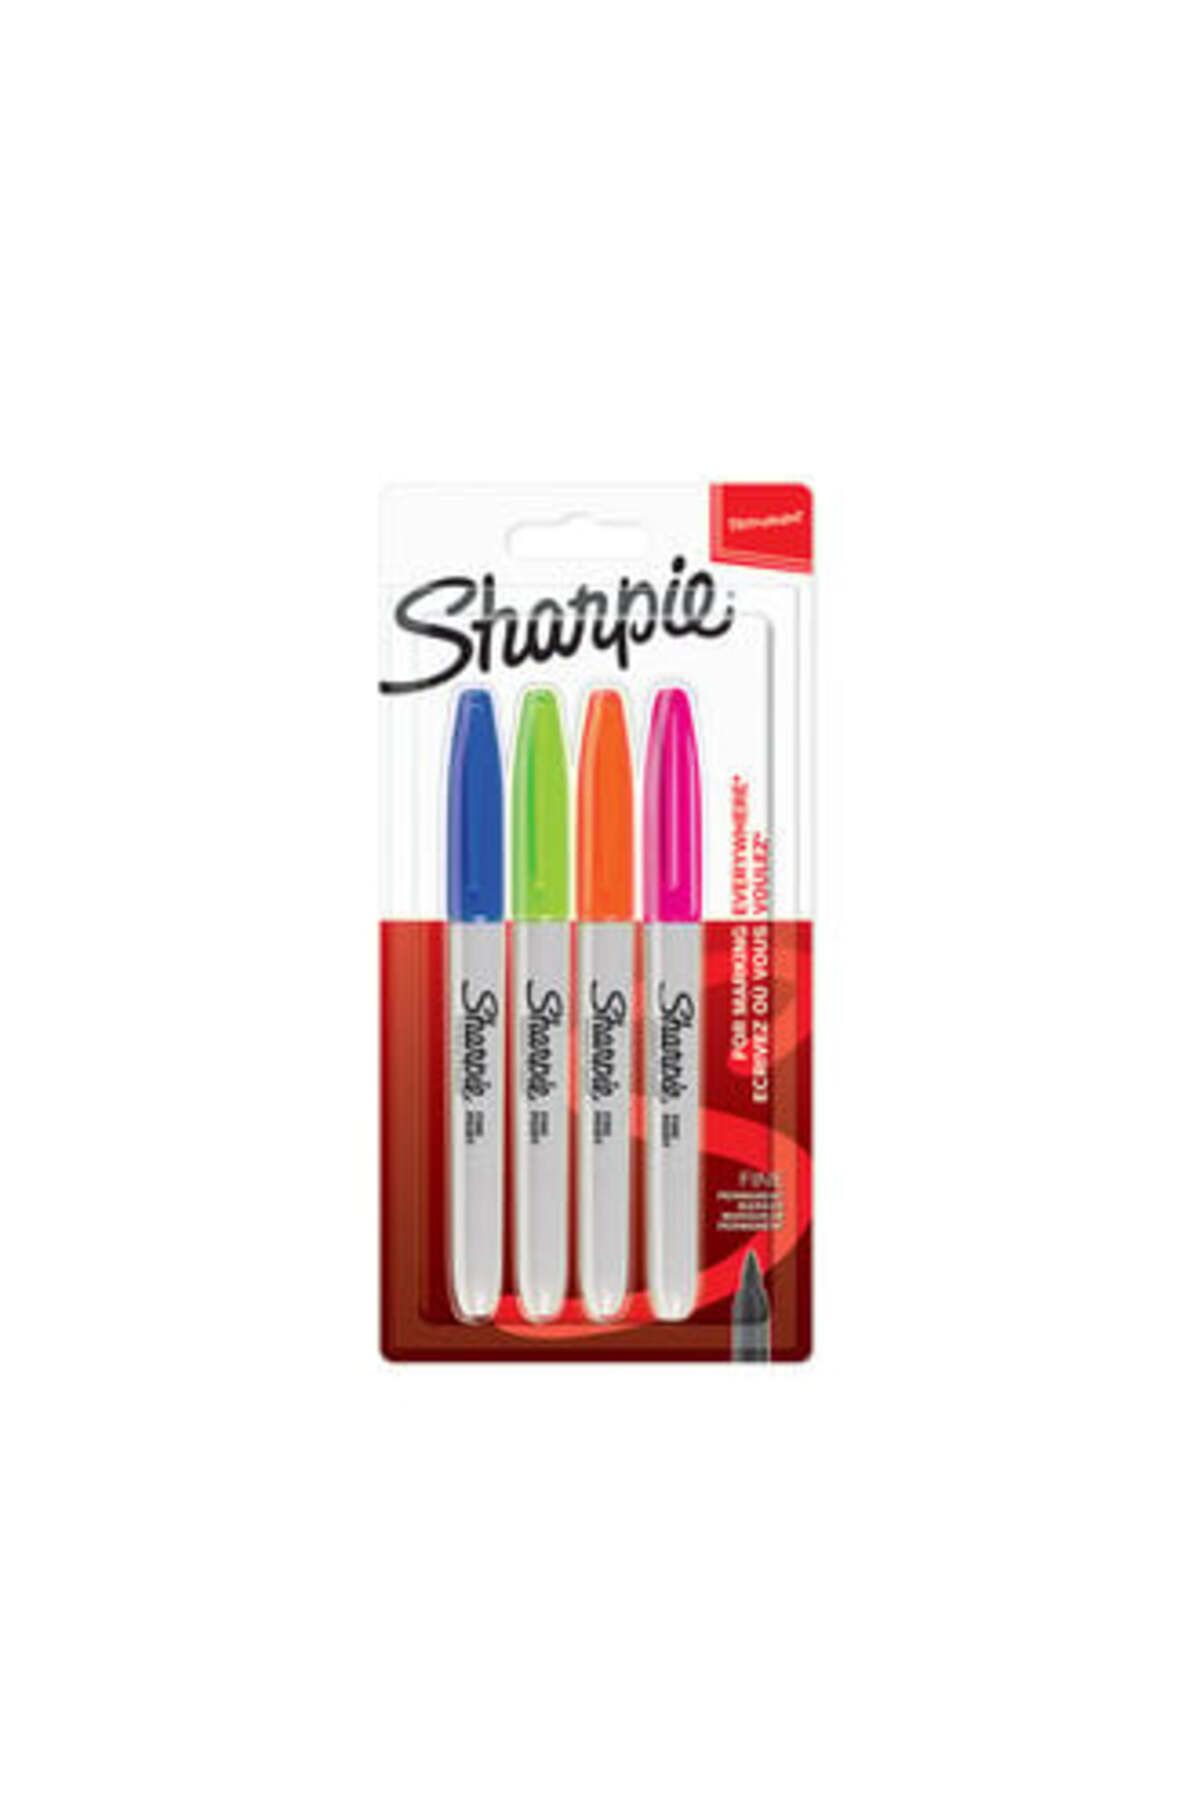 Sharpie Fine Permanent Keçeli kalem, 4'lü Canlı Renkli Boya Kalemi Seti ( 1 ADET )